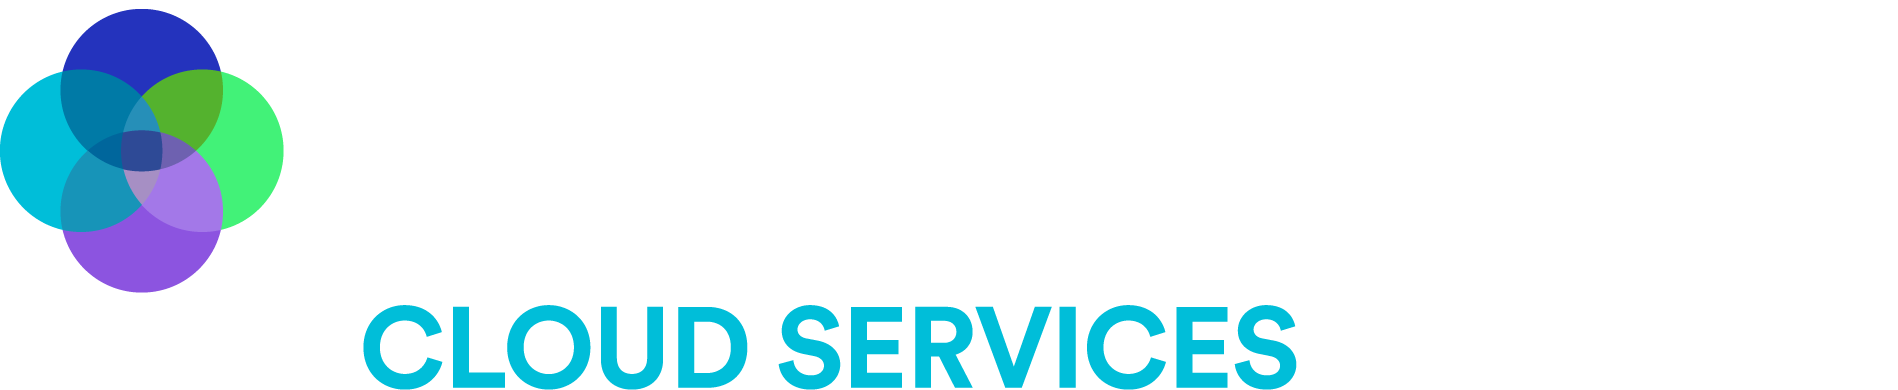 Macquarie Cloud Services